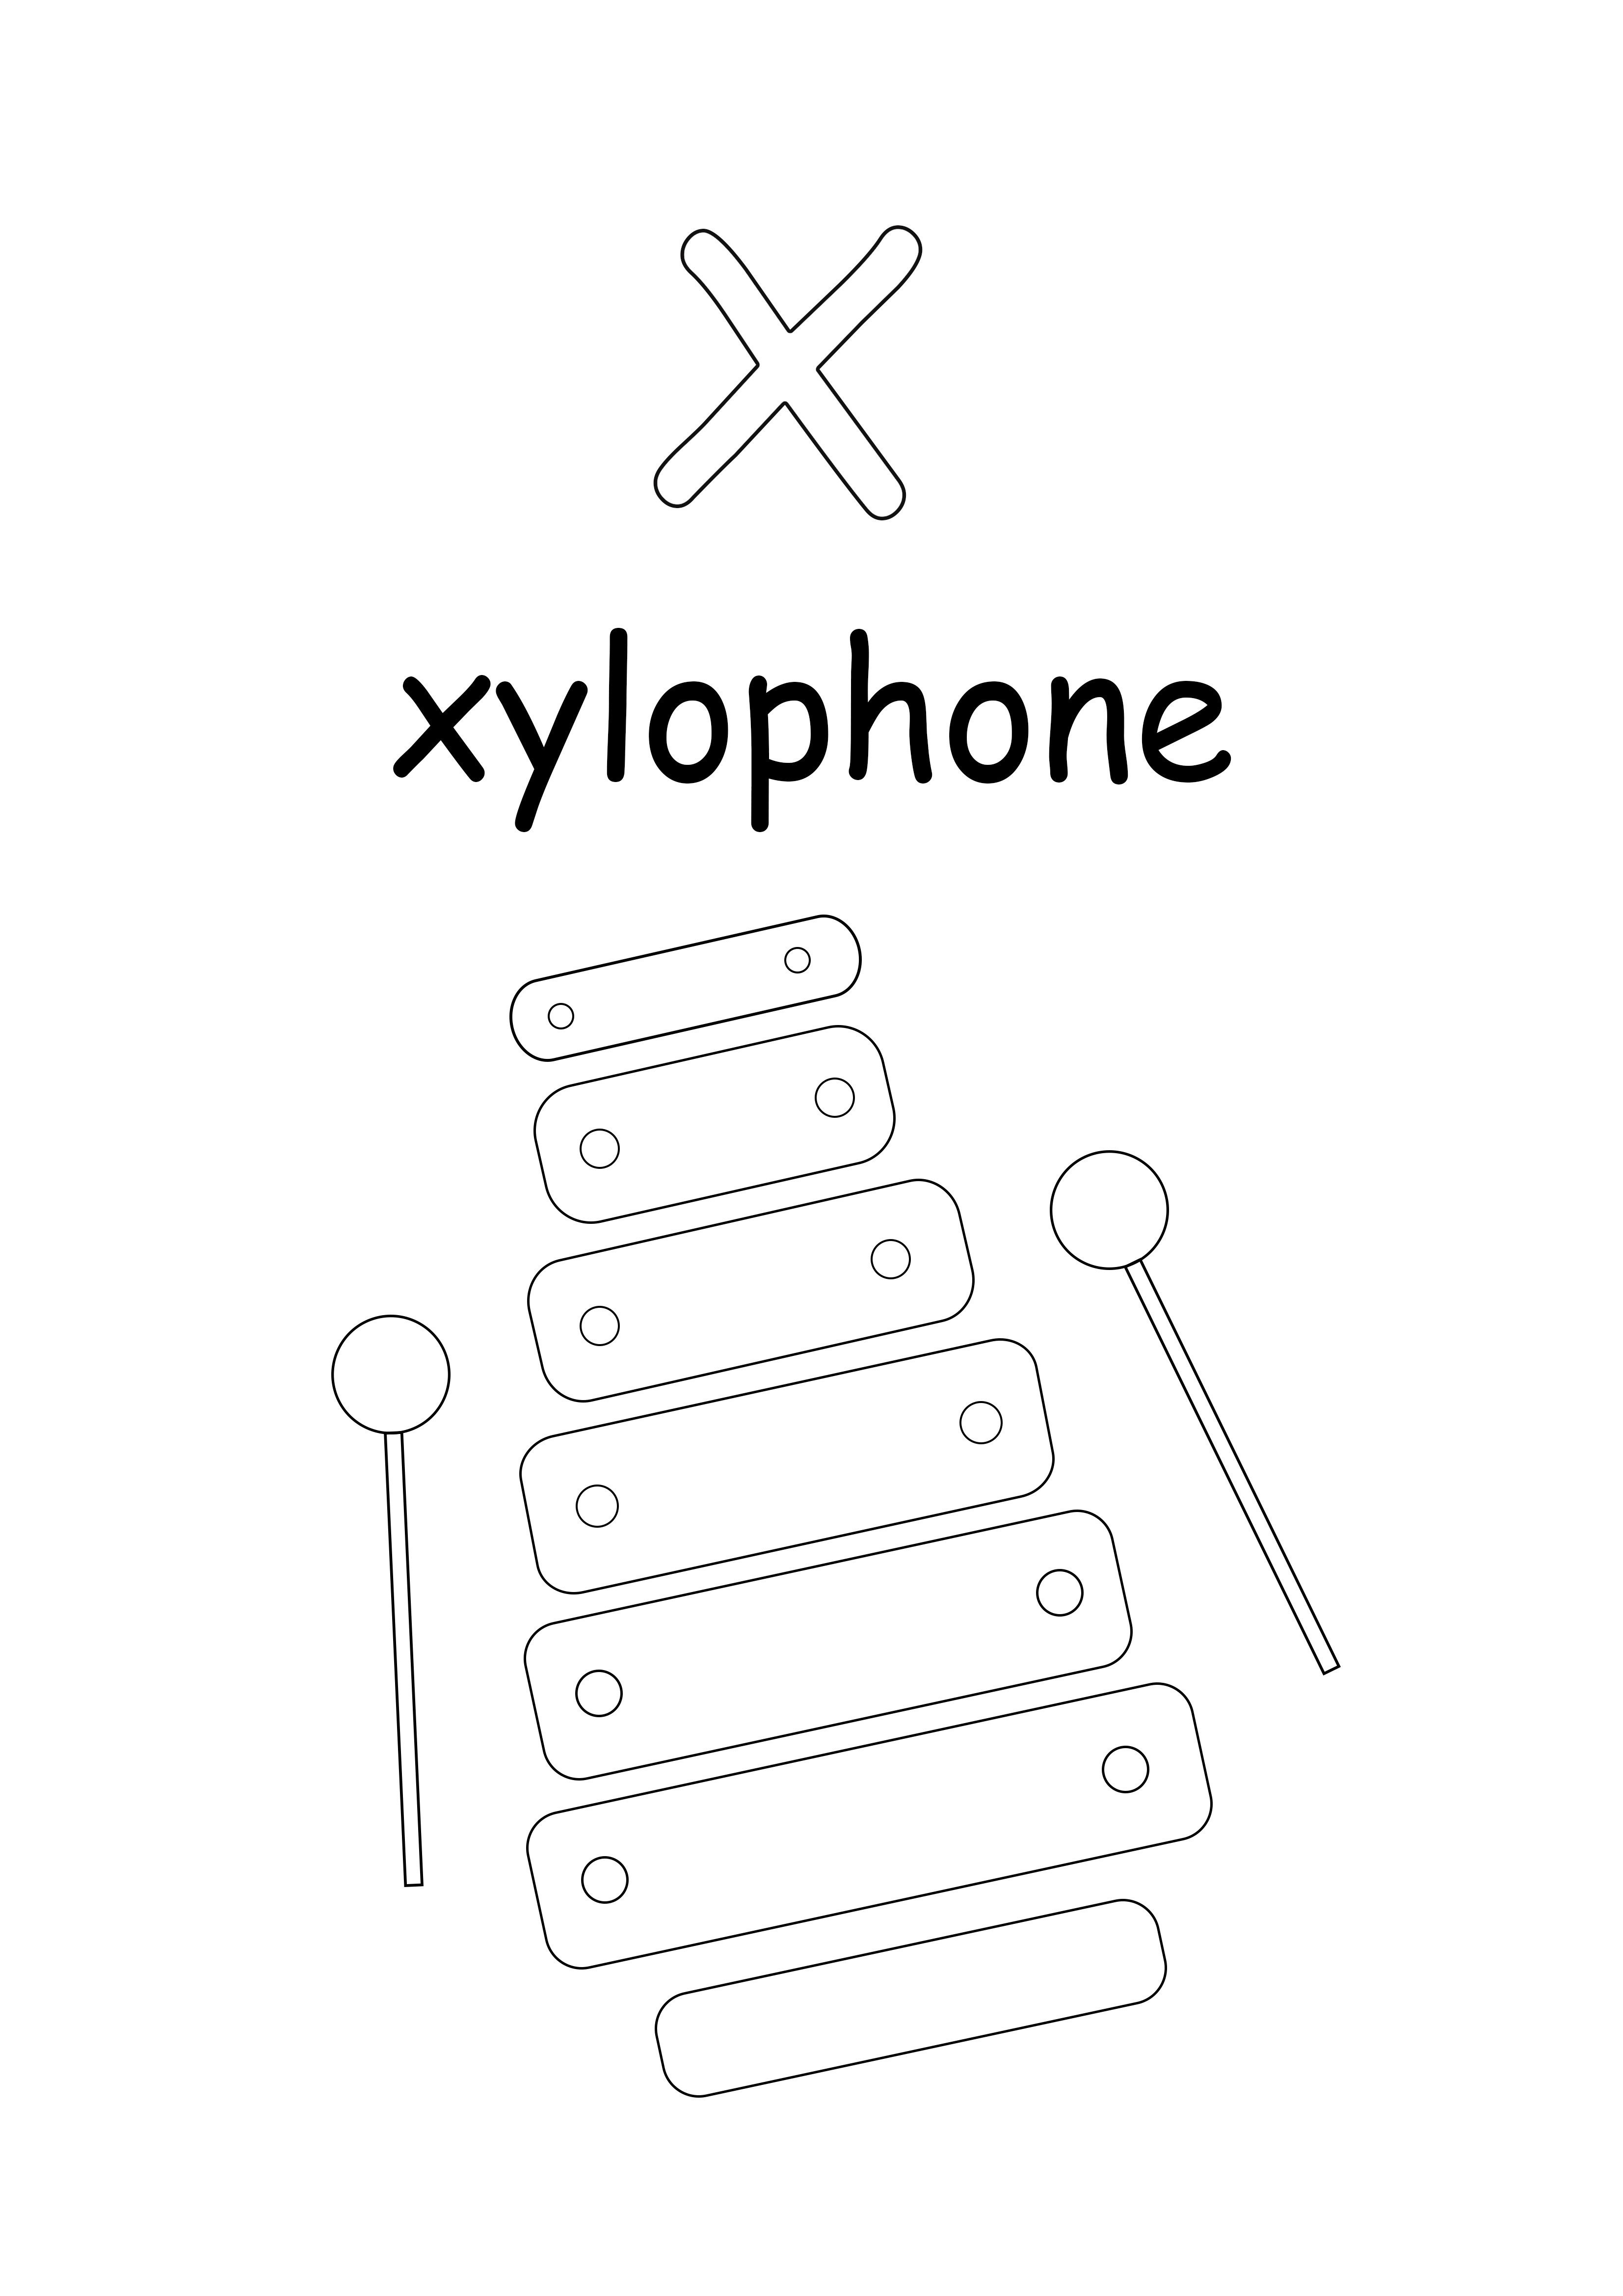 Mała litera x oznacza kolorowanie i drukowanie bez ksylofonu